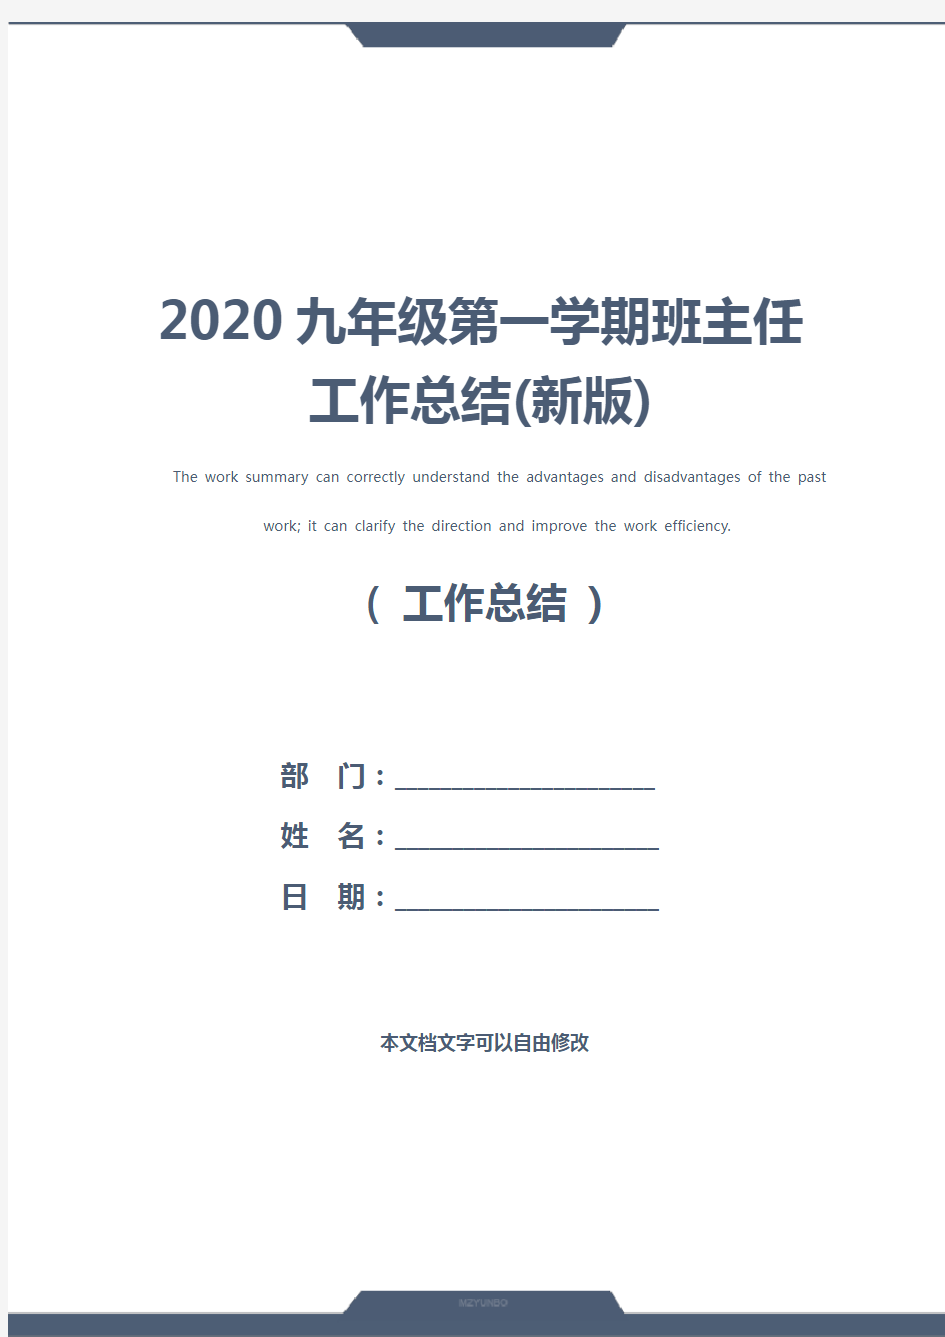 2020九年级第一学期班主任工作总结(新版)